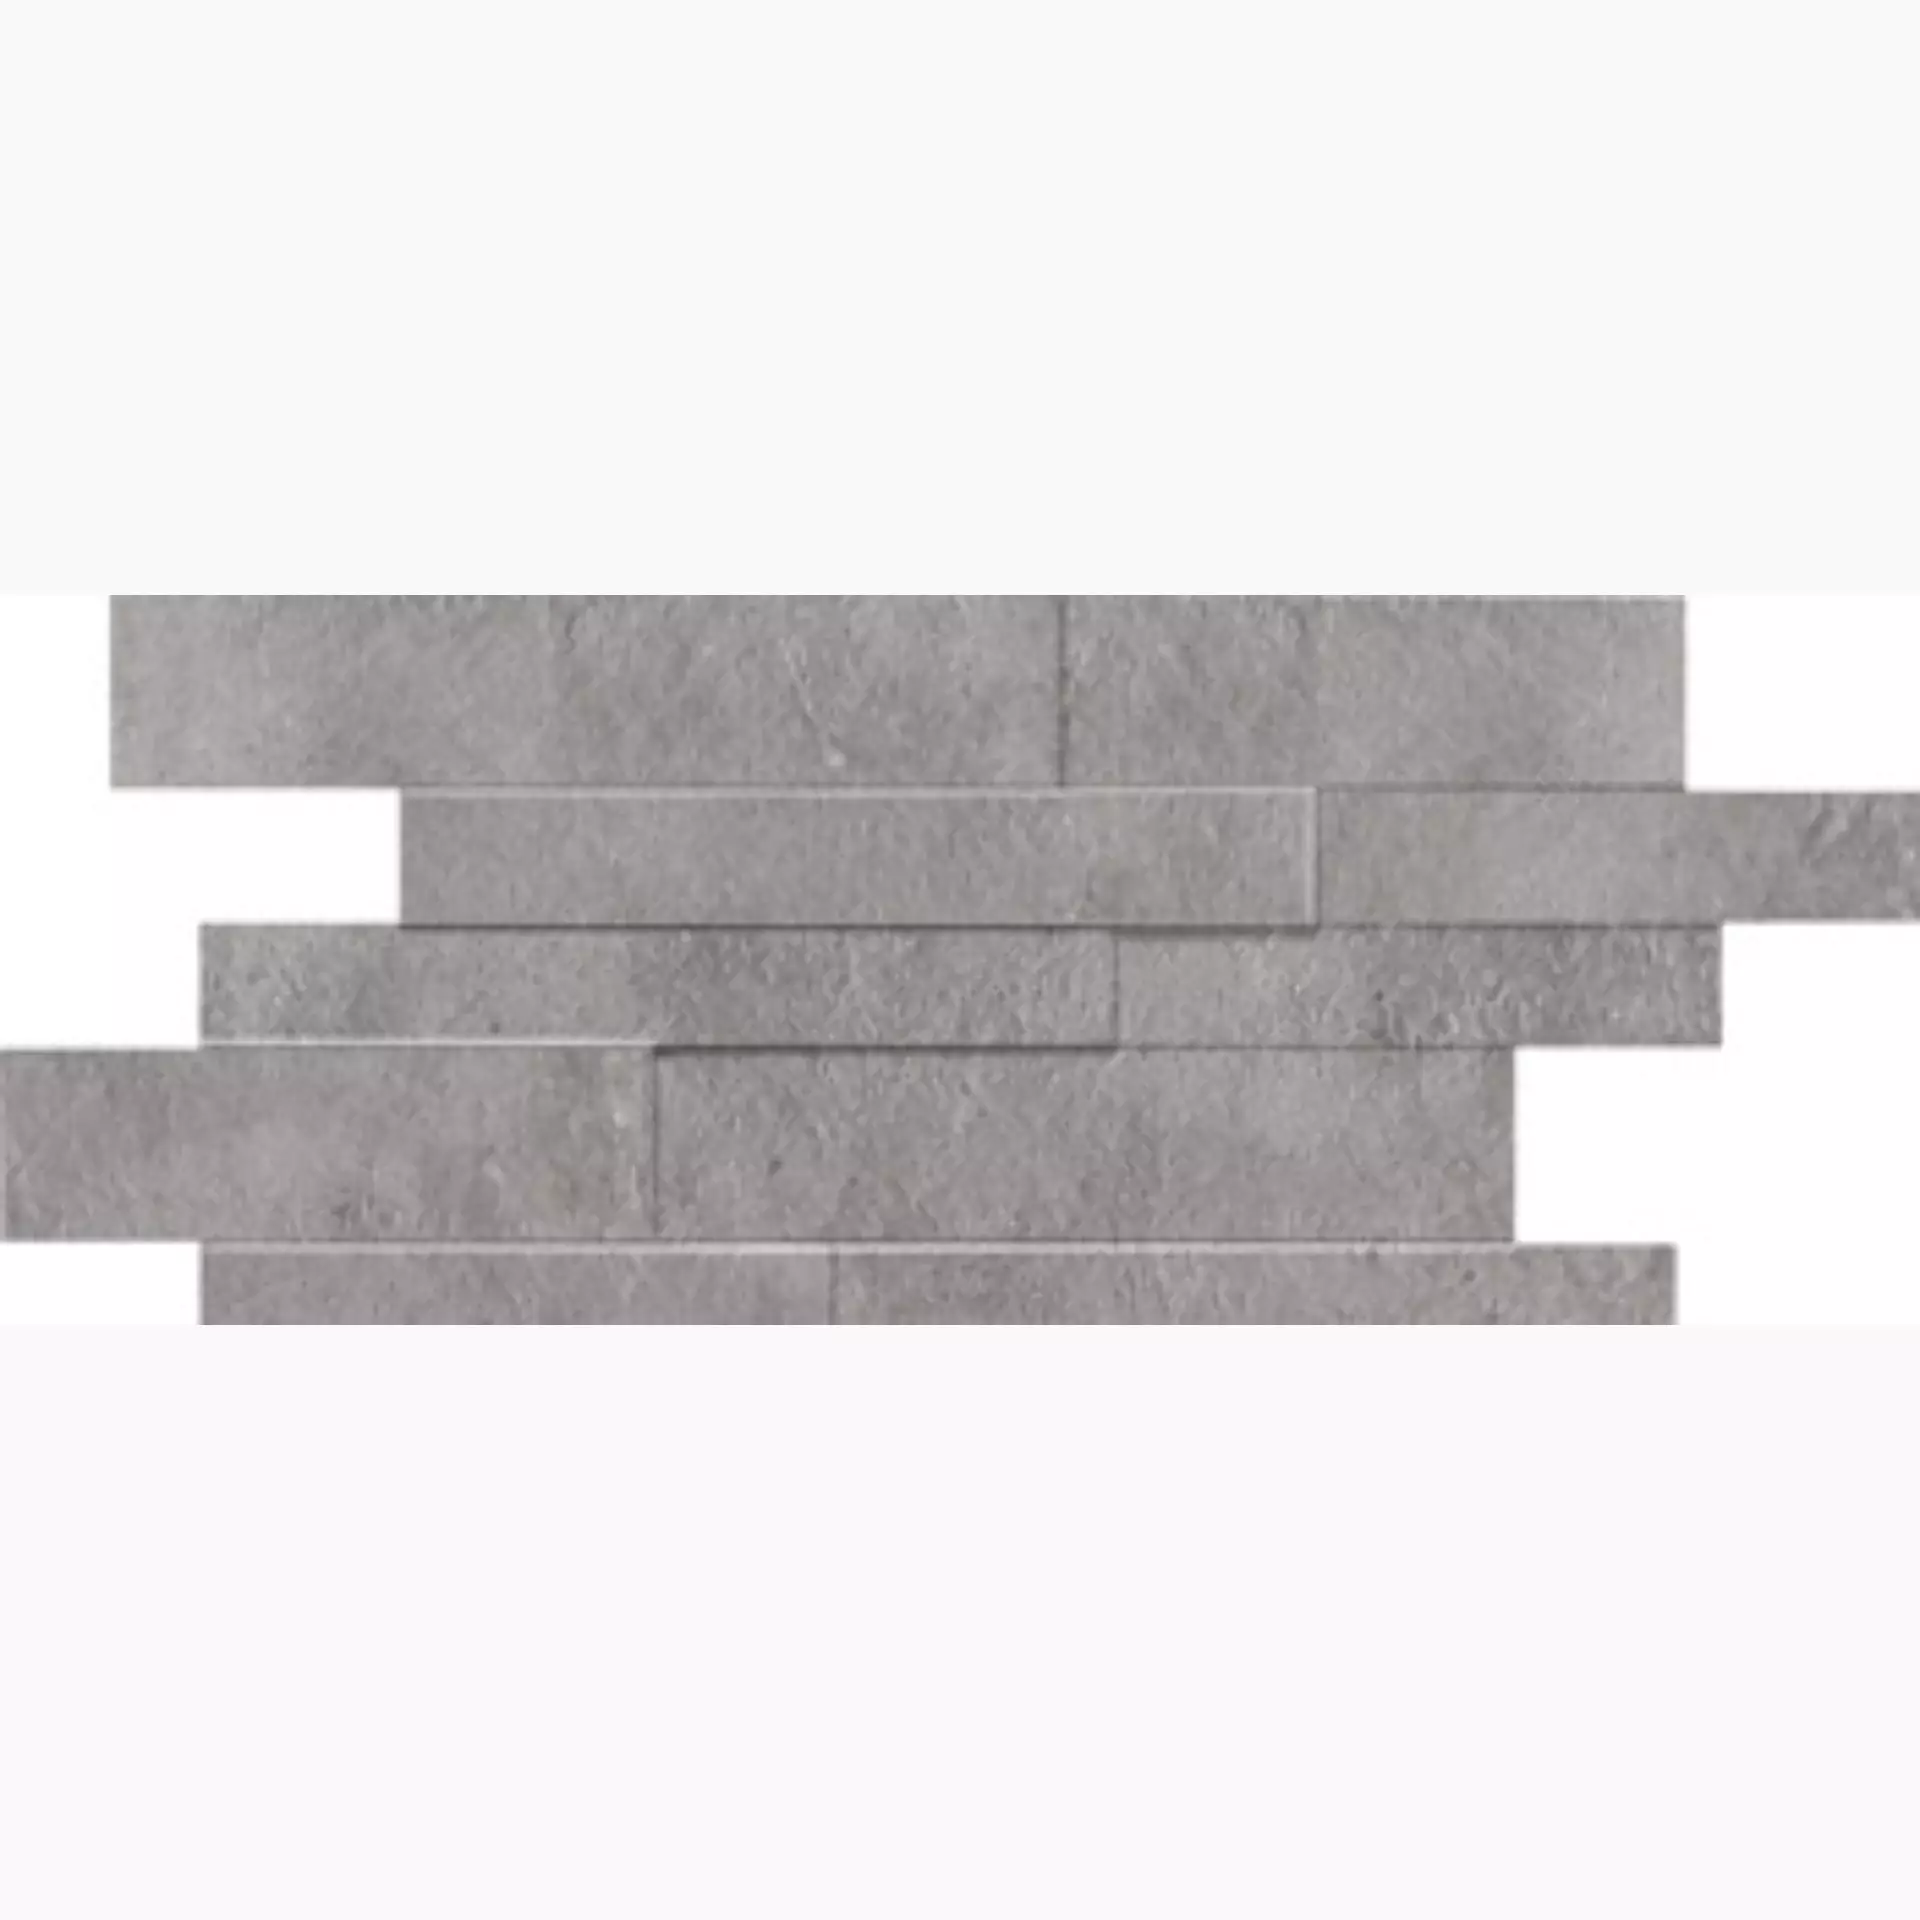 Imola Concrete Project Grigio Natural Flat Matt Grigio 119499 glatt matt natur 30x60cm Muretto 15mm